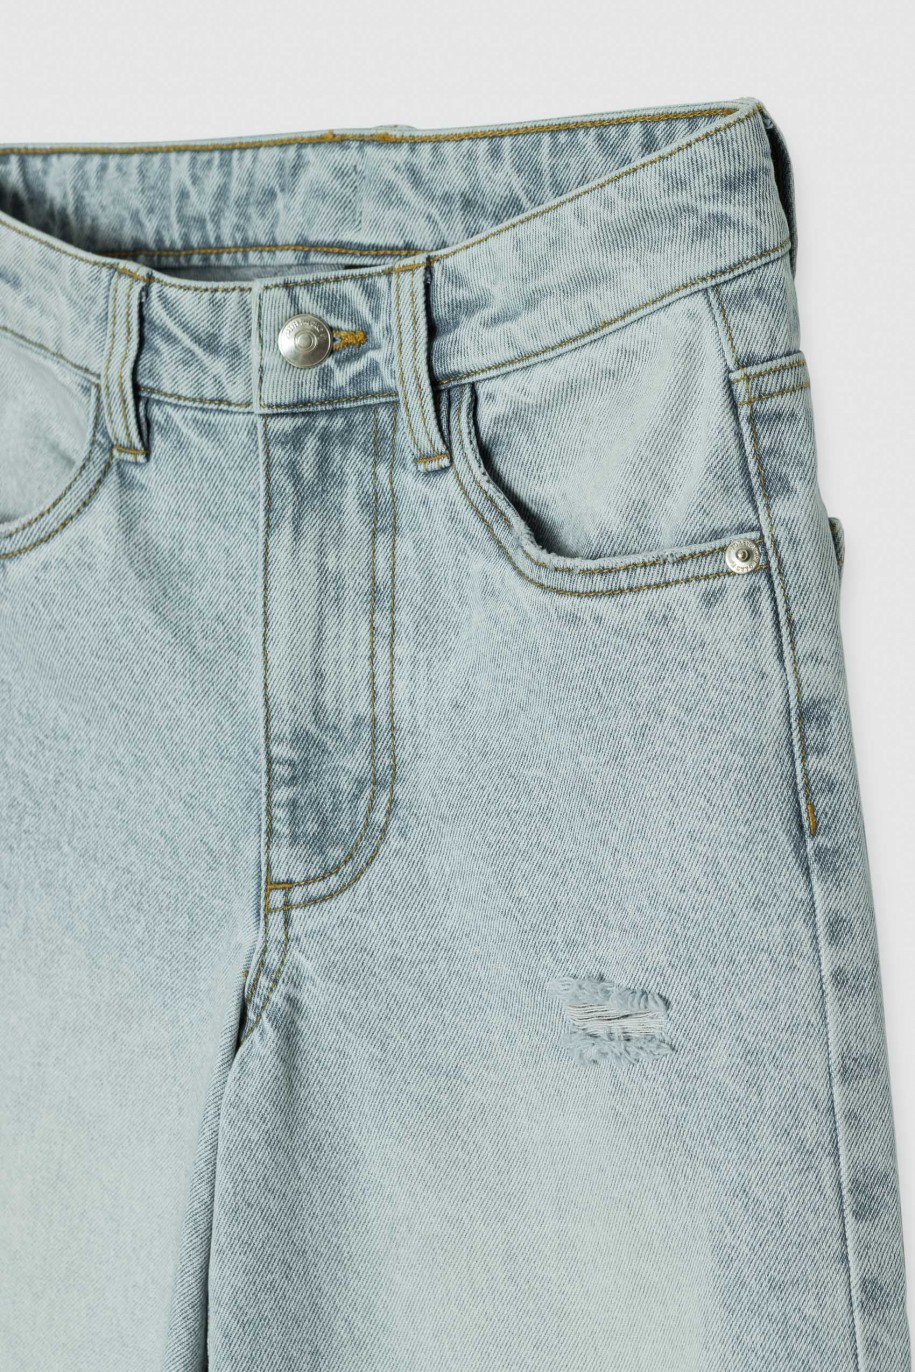 Niebieskie jeansy 3/4 z szeroką nogawką - 40870